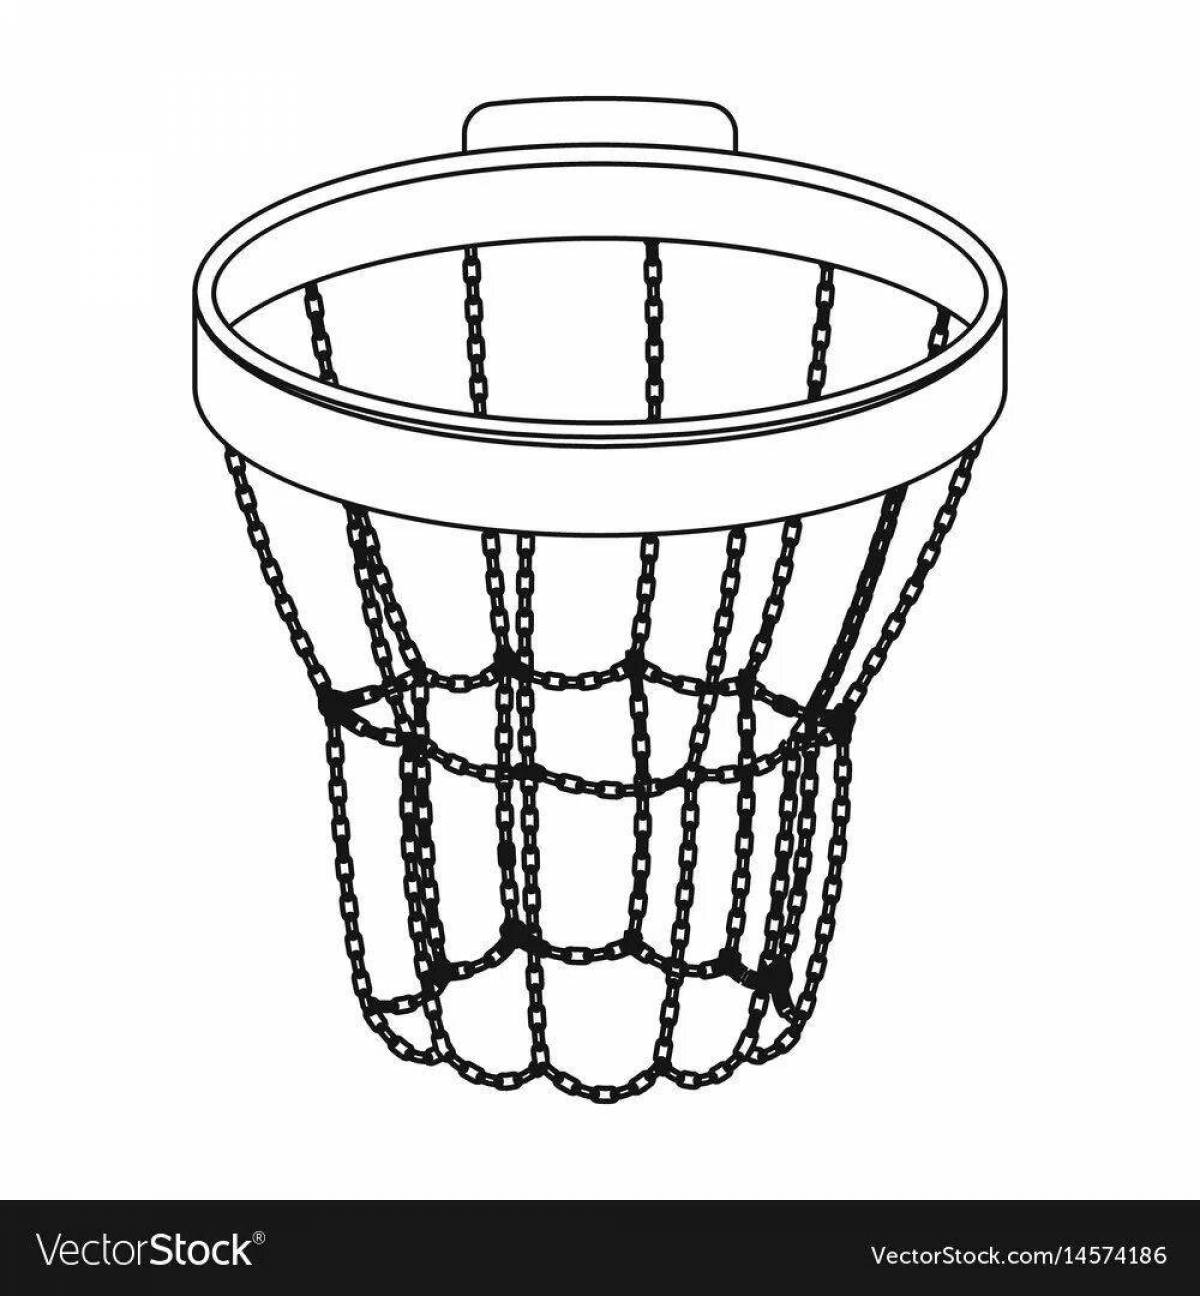 Захватывающая страница раскраски баскетбольного кольца